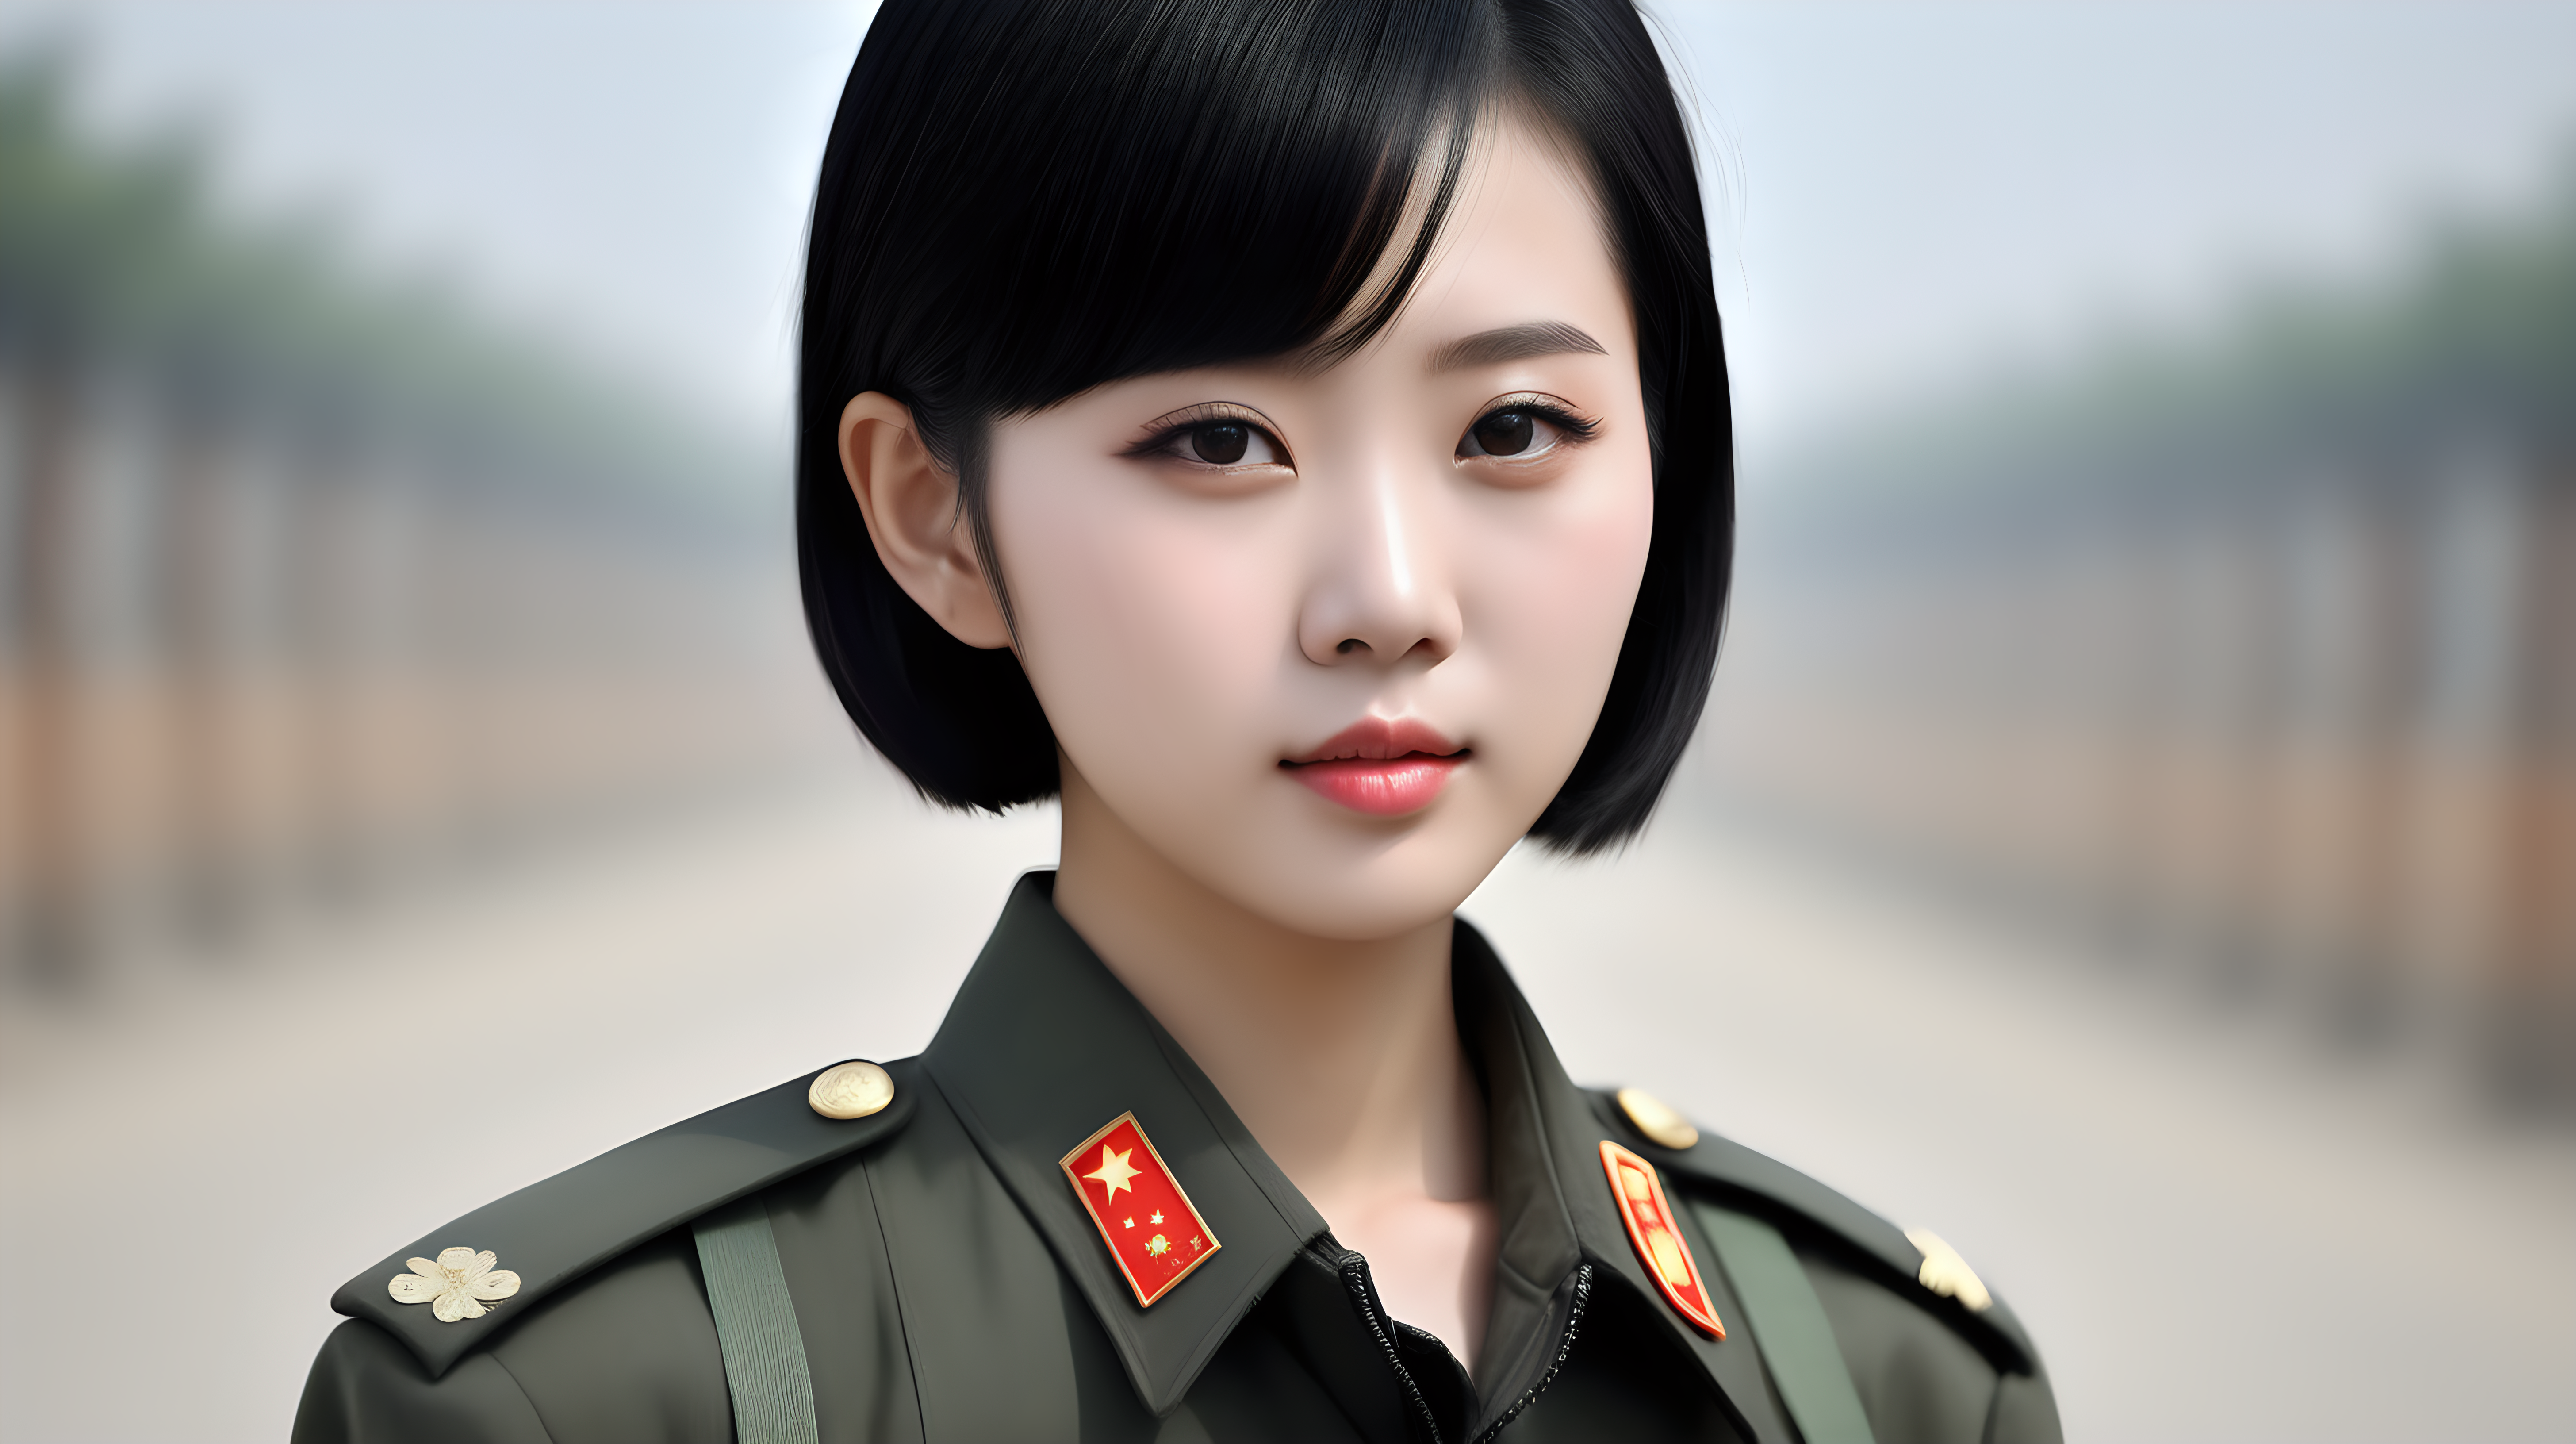 一名中国女兵
黑发
短发
青年人
乳房较大